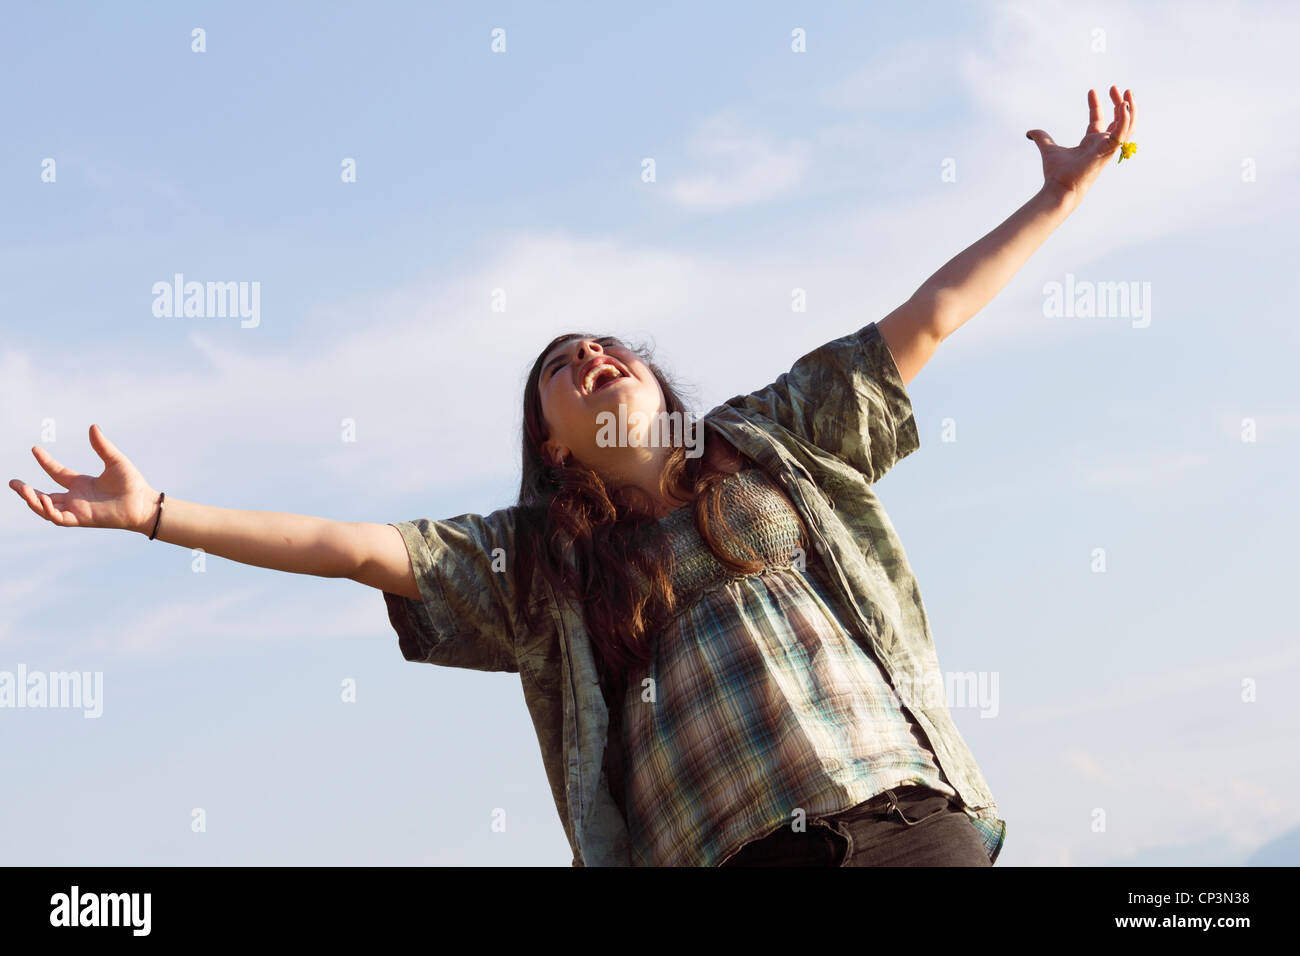 Schreien Sie vor Freude - junge Teenager-Mädchen mit erhobenen Armen frei zu fühlen. Sonnige Sommer im Freien Schuss vor blauem Himmel. Stockfoto